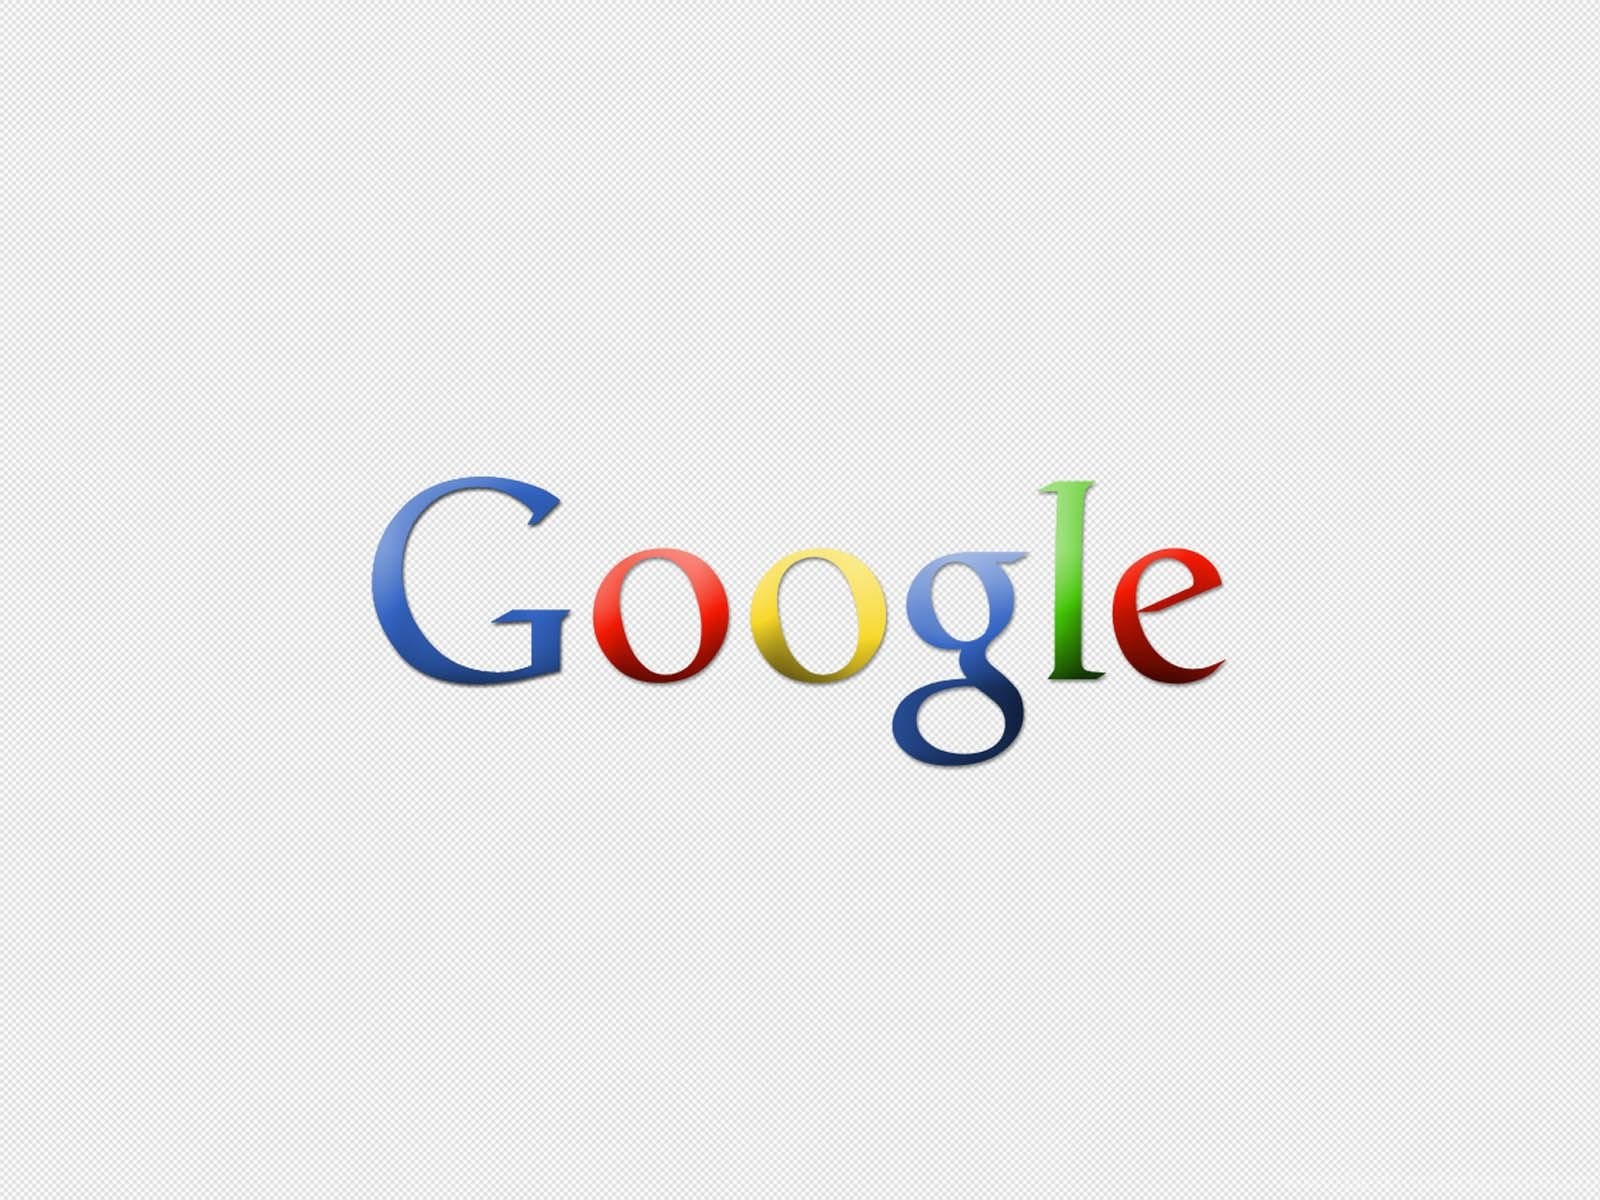 Сайт гугл ru. Значок гугл. Красивый логотип гугл. Логотип гугл без фона.